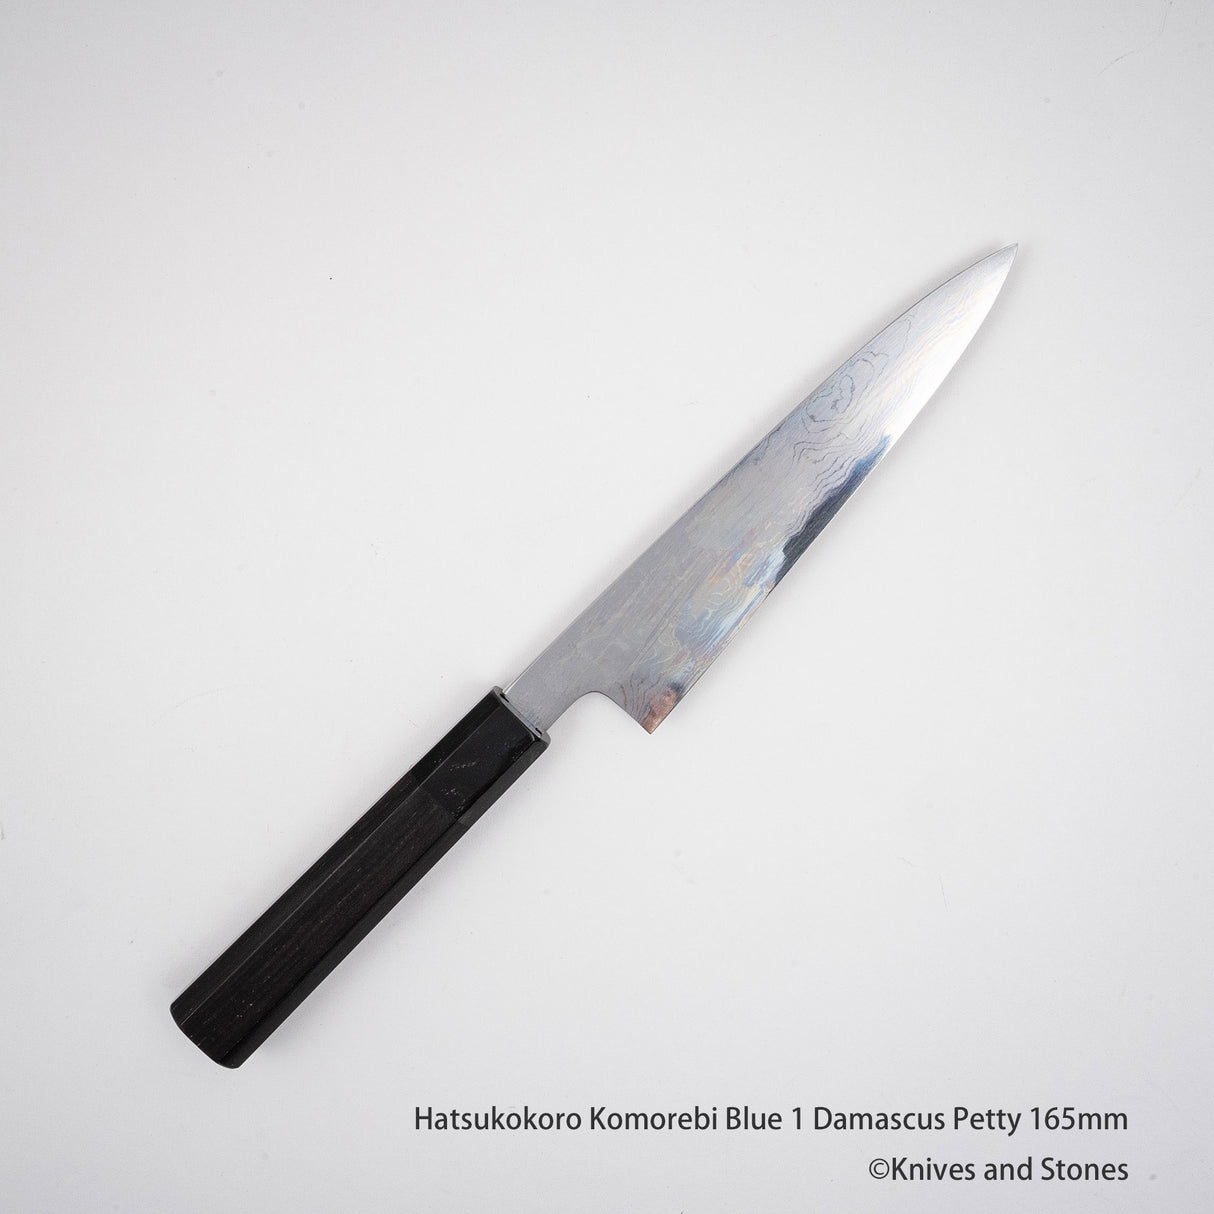 Hatsukokoro Komorebi Blue 1 Damascus Petty 165mm